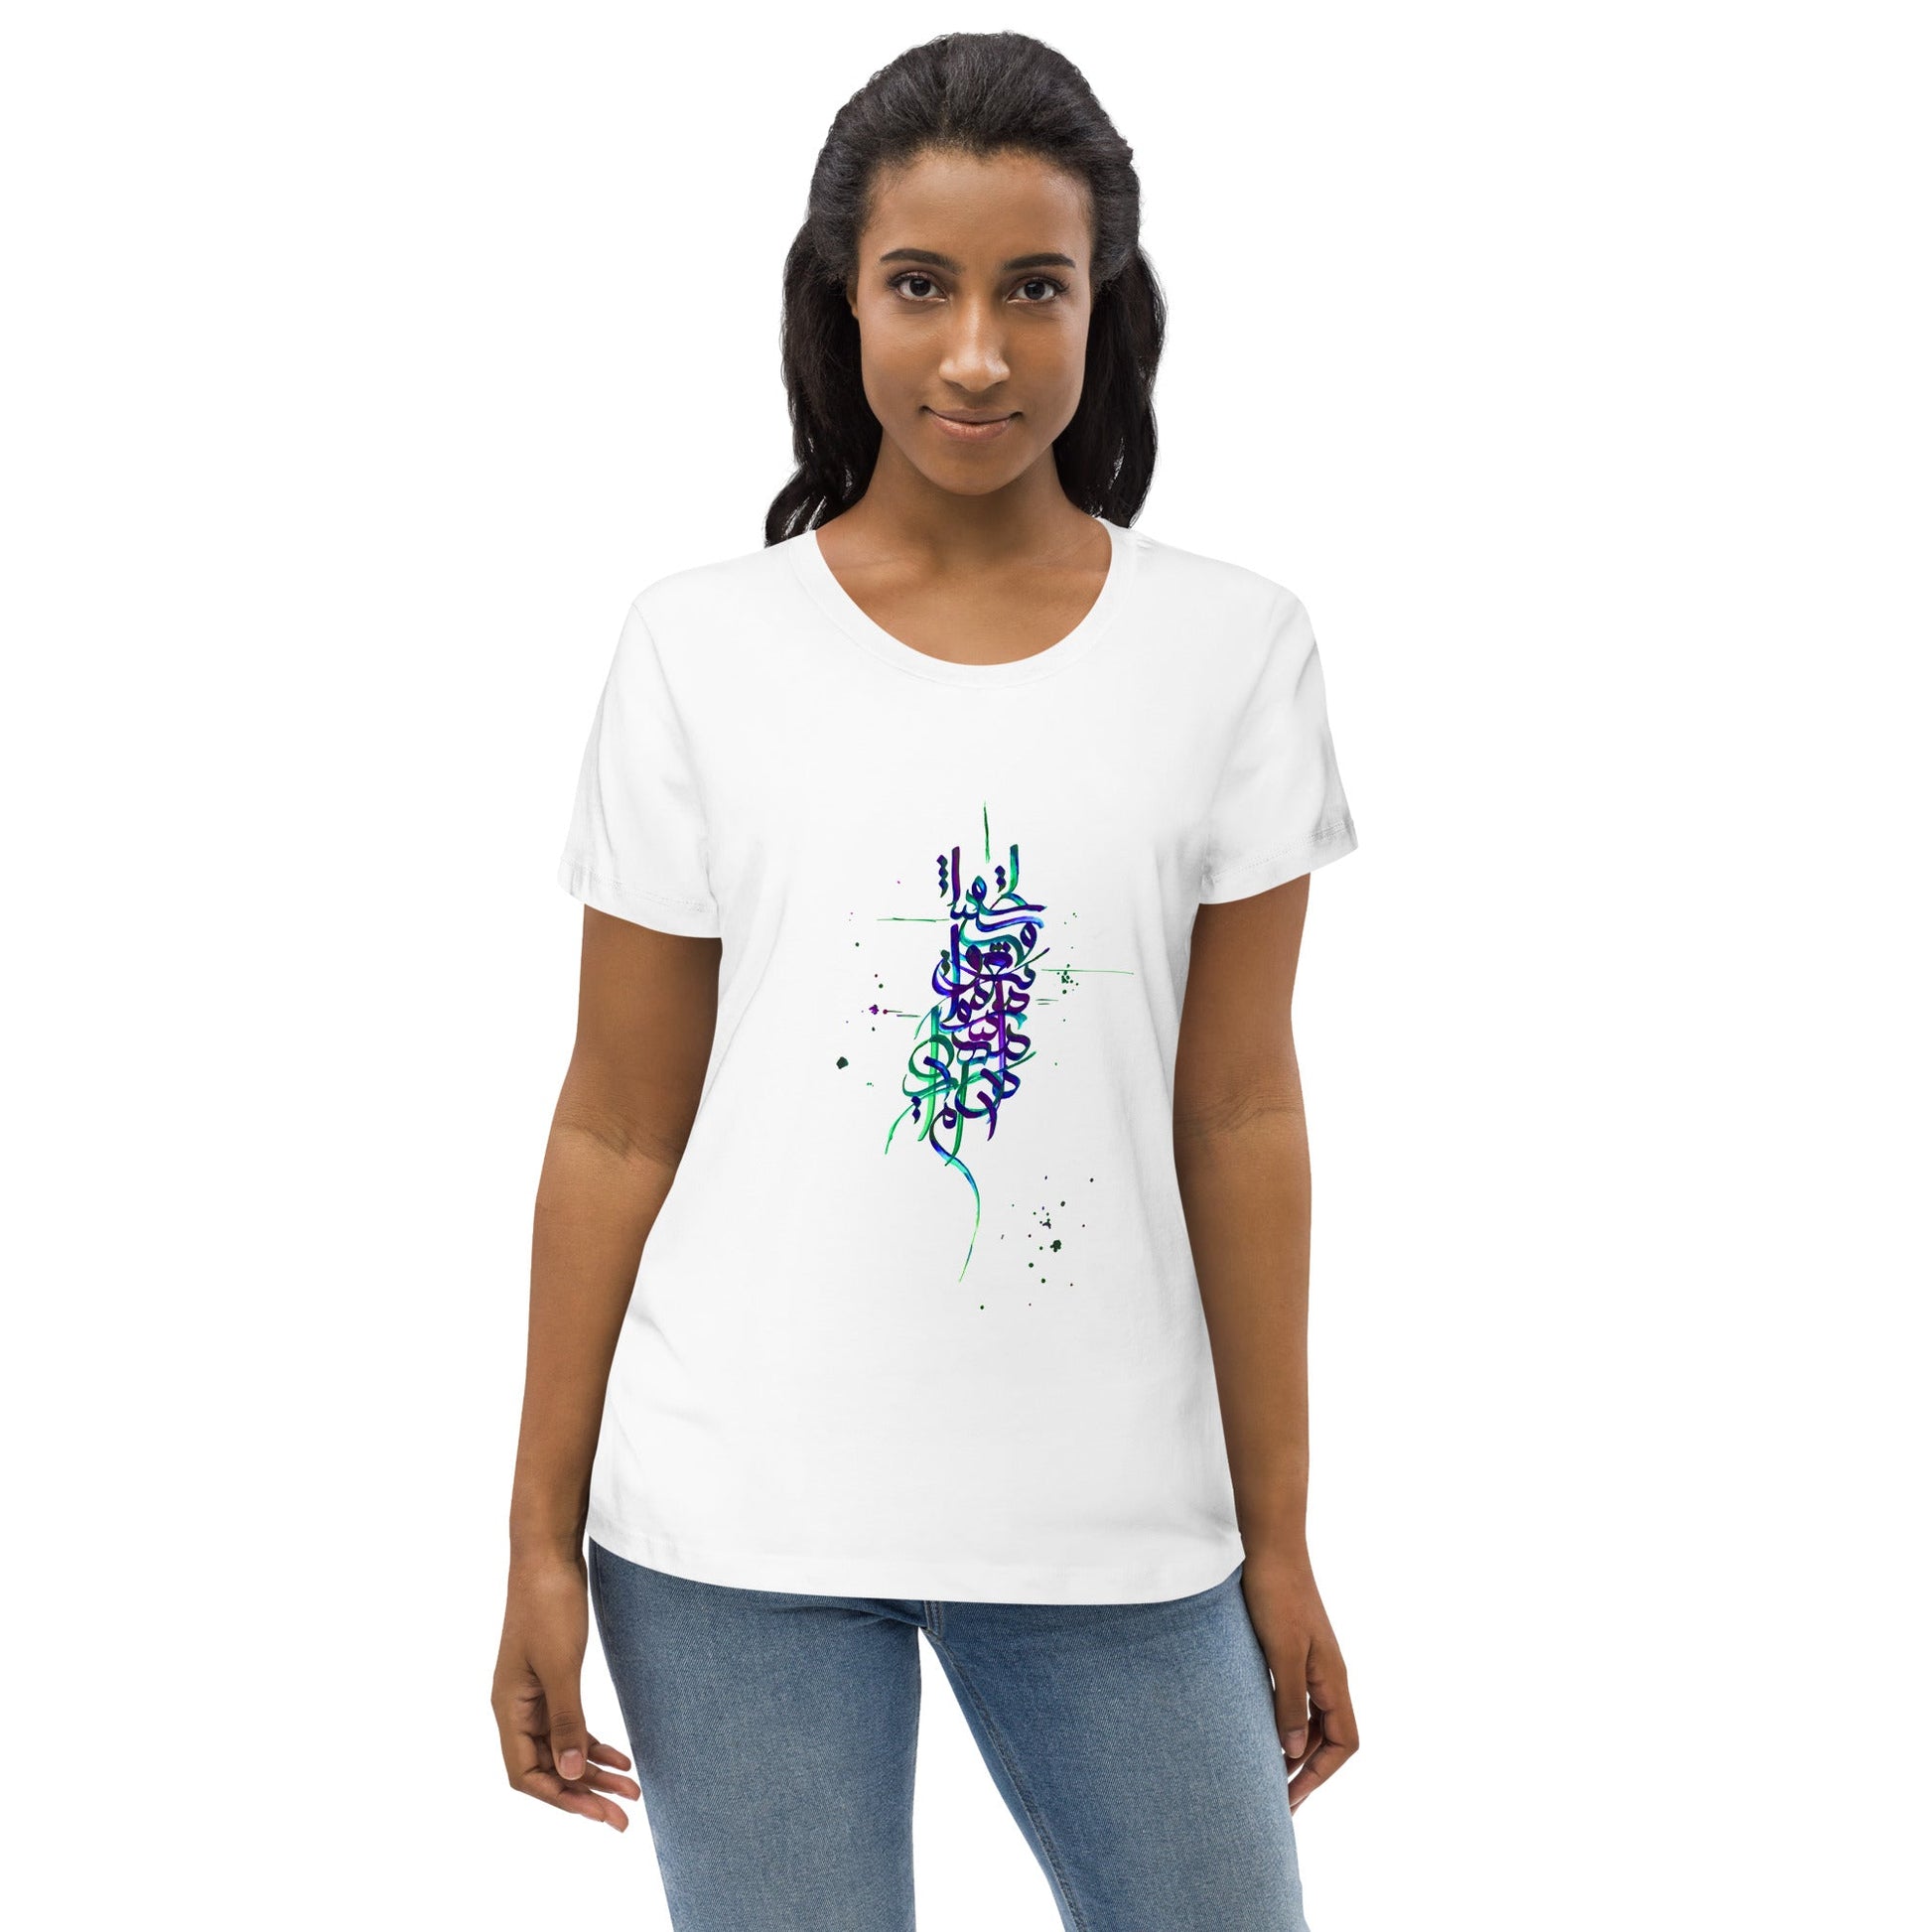 MEHMAN Women's Eco T-Shirt - Bonotee